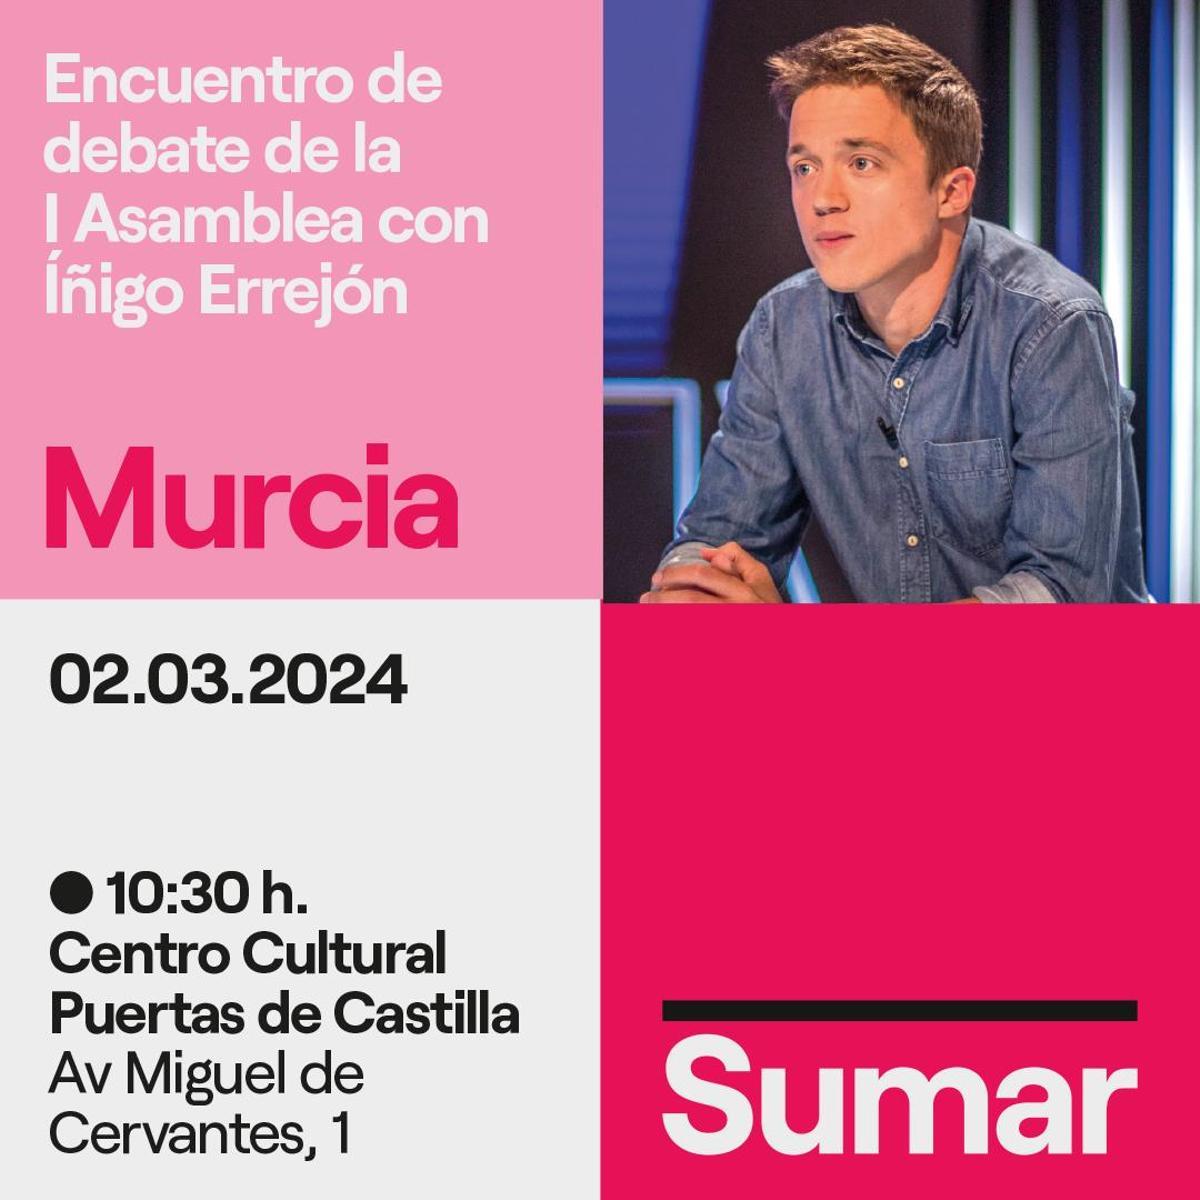 Cartel que anuncia la visita de Errejón en Murcia